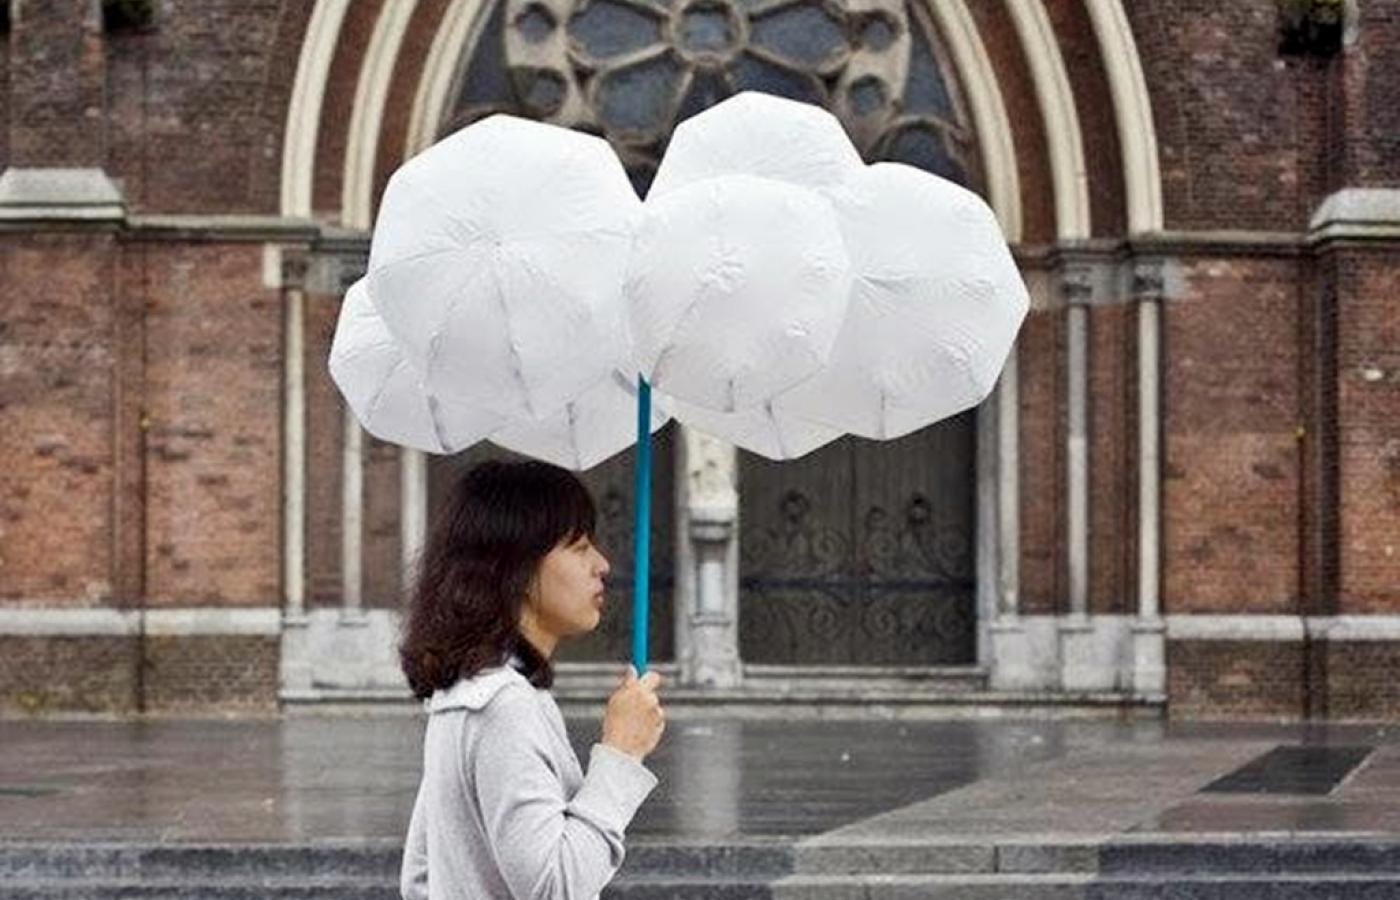 Spacer z głową w chmurach? <b>Cloud Umbrella</b>, czyli „chmurzasty parasol”, sprawi, że będzie to wykonalne nawet w czasie deszczu. Holenderski projekt może być ciekawym prezentem dla artystów. Przypomina bowiem bąbelkowo-chmurzastą rzeźbę. Niezły. Ochroni nas przed deszczem, ale niestety nie unikniemy dzięki niemu spojrzeń przechodniów. Gadżet raczej nie dla nieśmiałych.